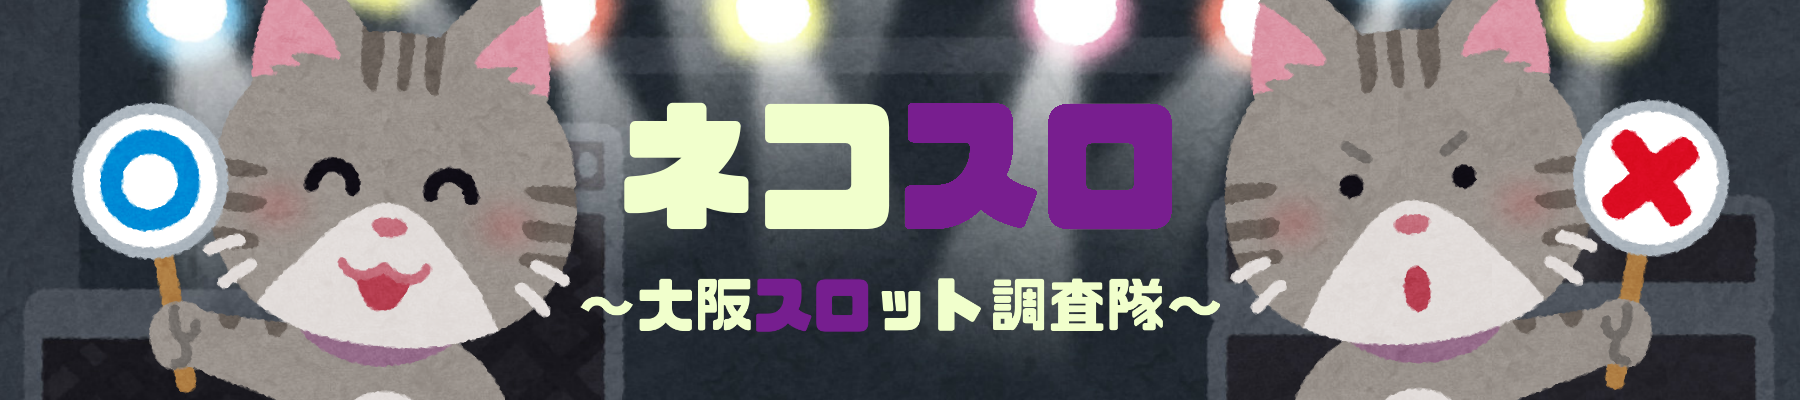 大阪 キングオブキングス高槻 9月3日 特定日 ネコスロ 大阪イベント調査隊